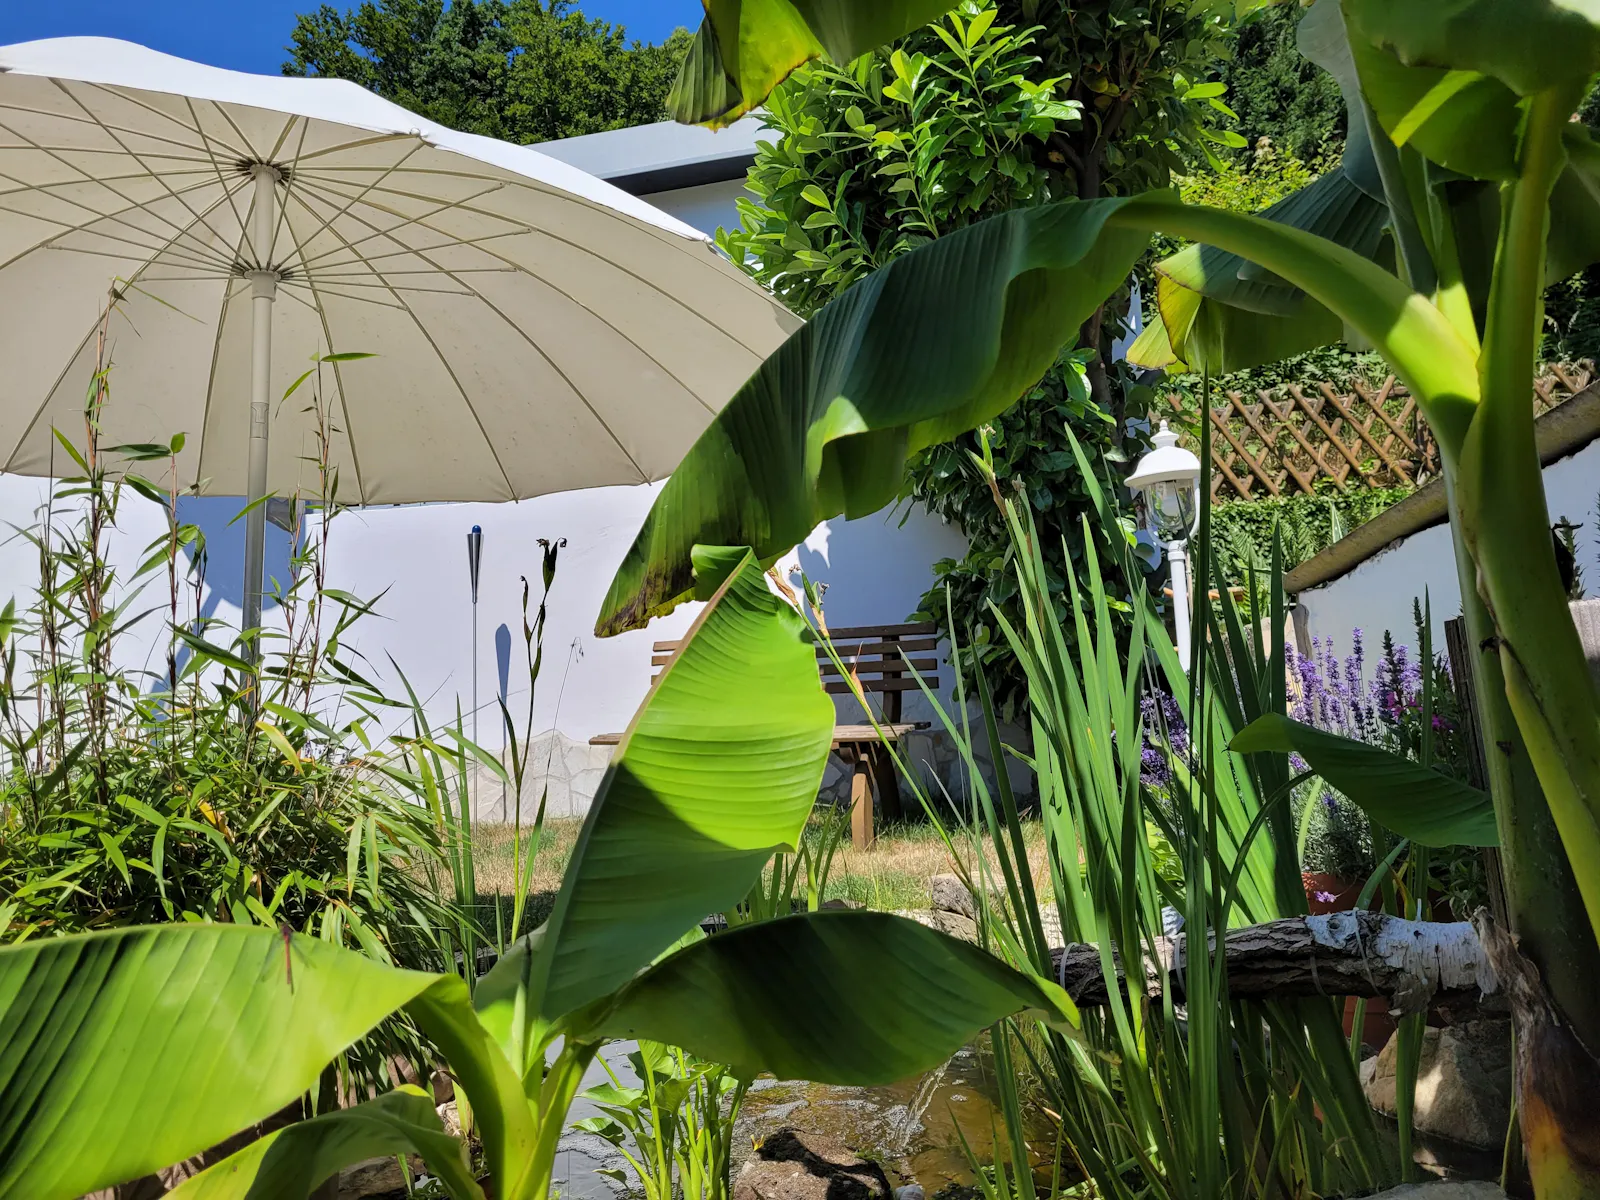 Sommerlicher Garten mit Bananenstauden und anderen Grünpflanzen, Teich und weißem Sonnenschirm.